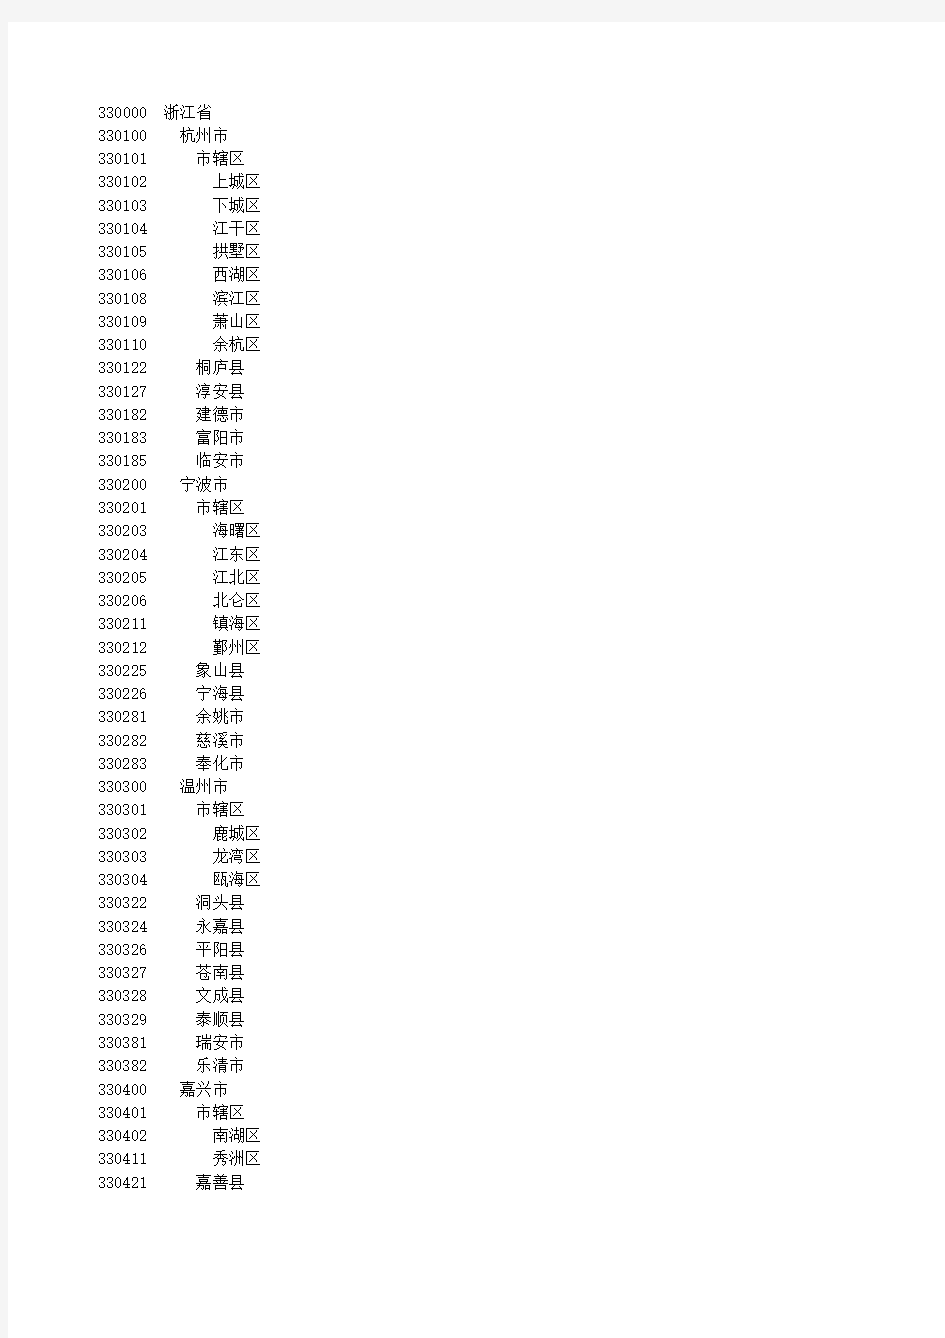 浙江省行政区划代码